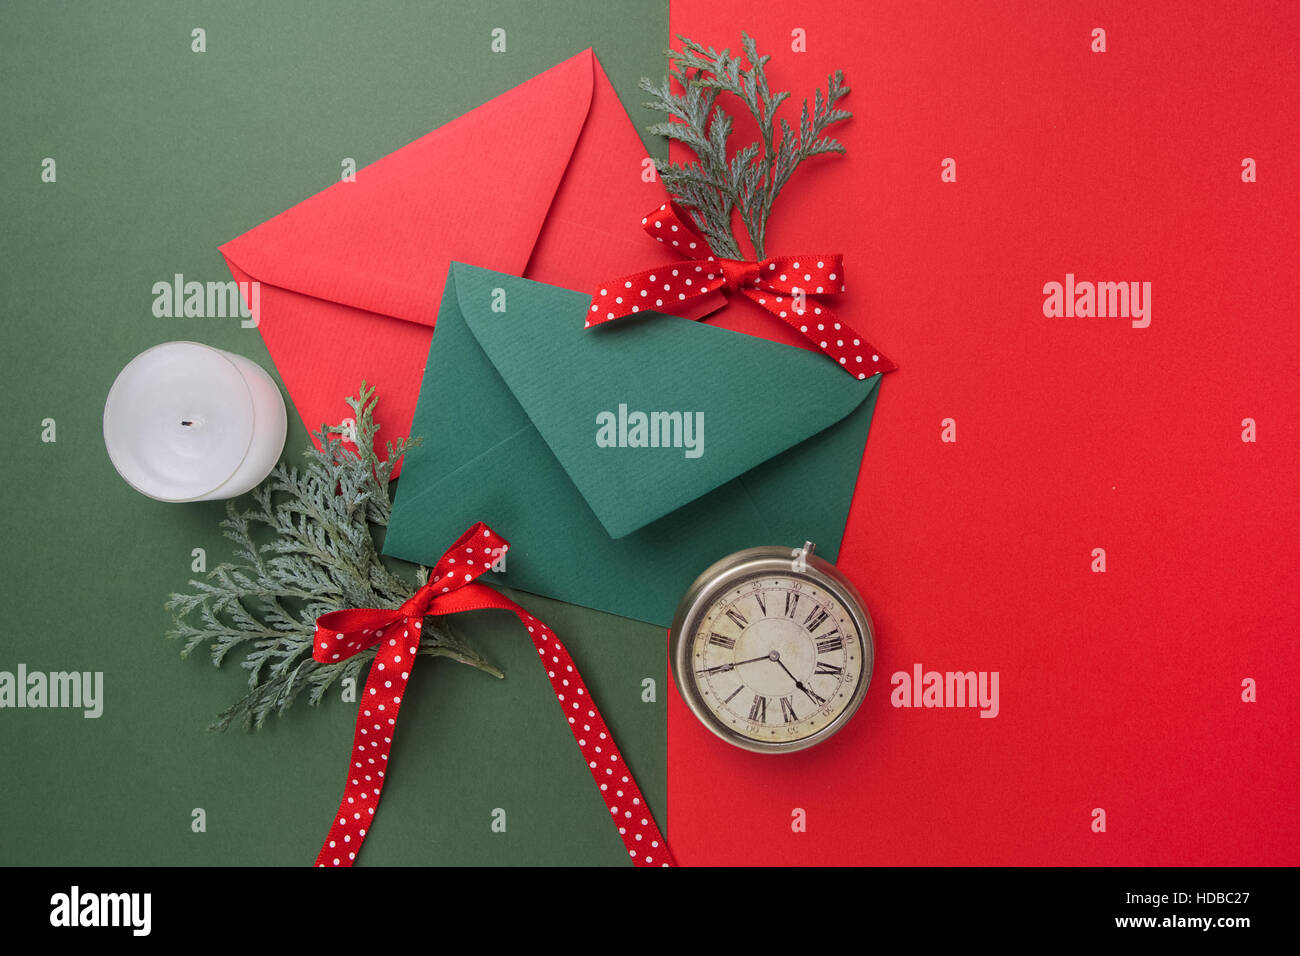 Enveloppes rouges et verts sur fond de vacances de Noël. Mise à plat. Banque D'Images